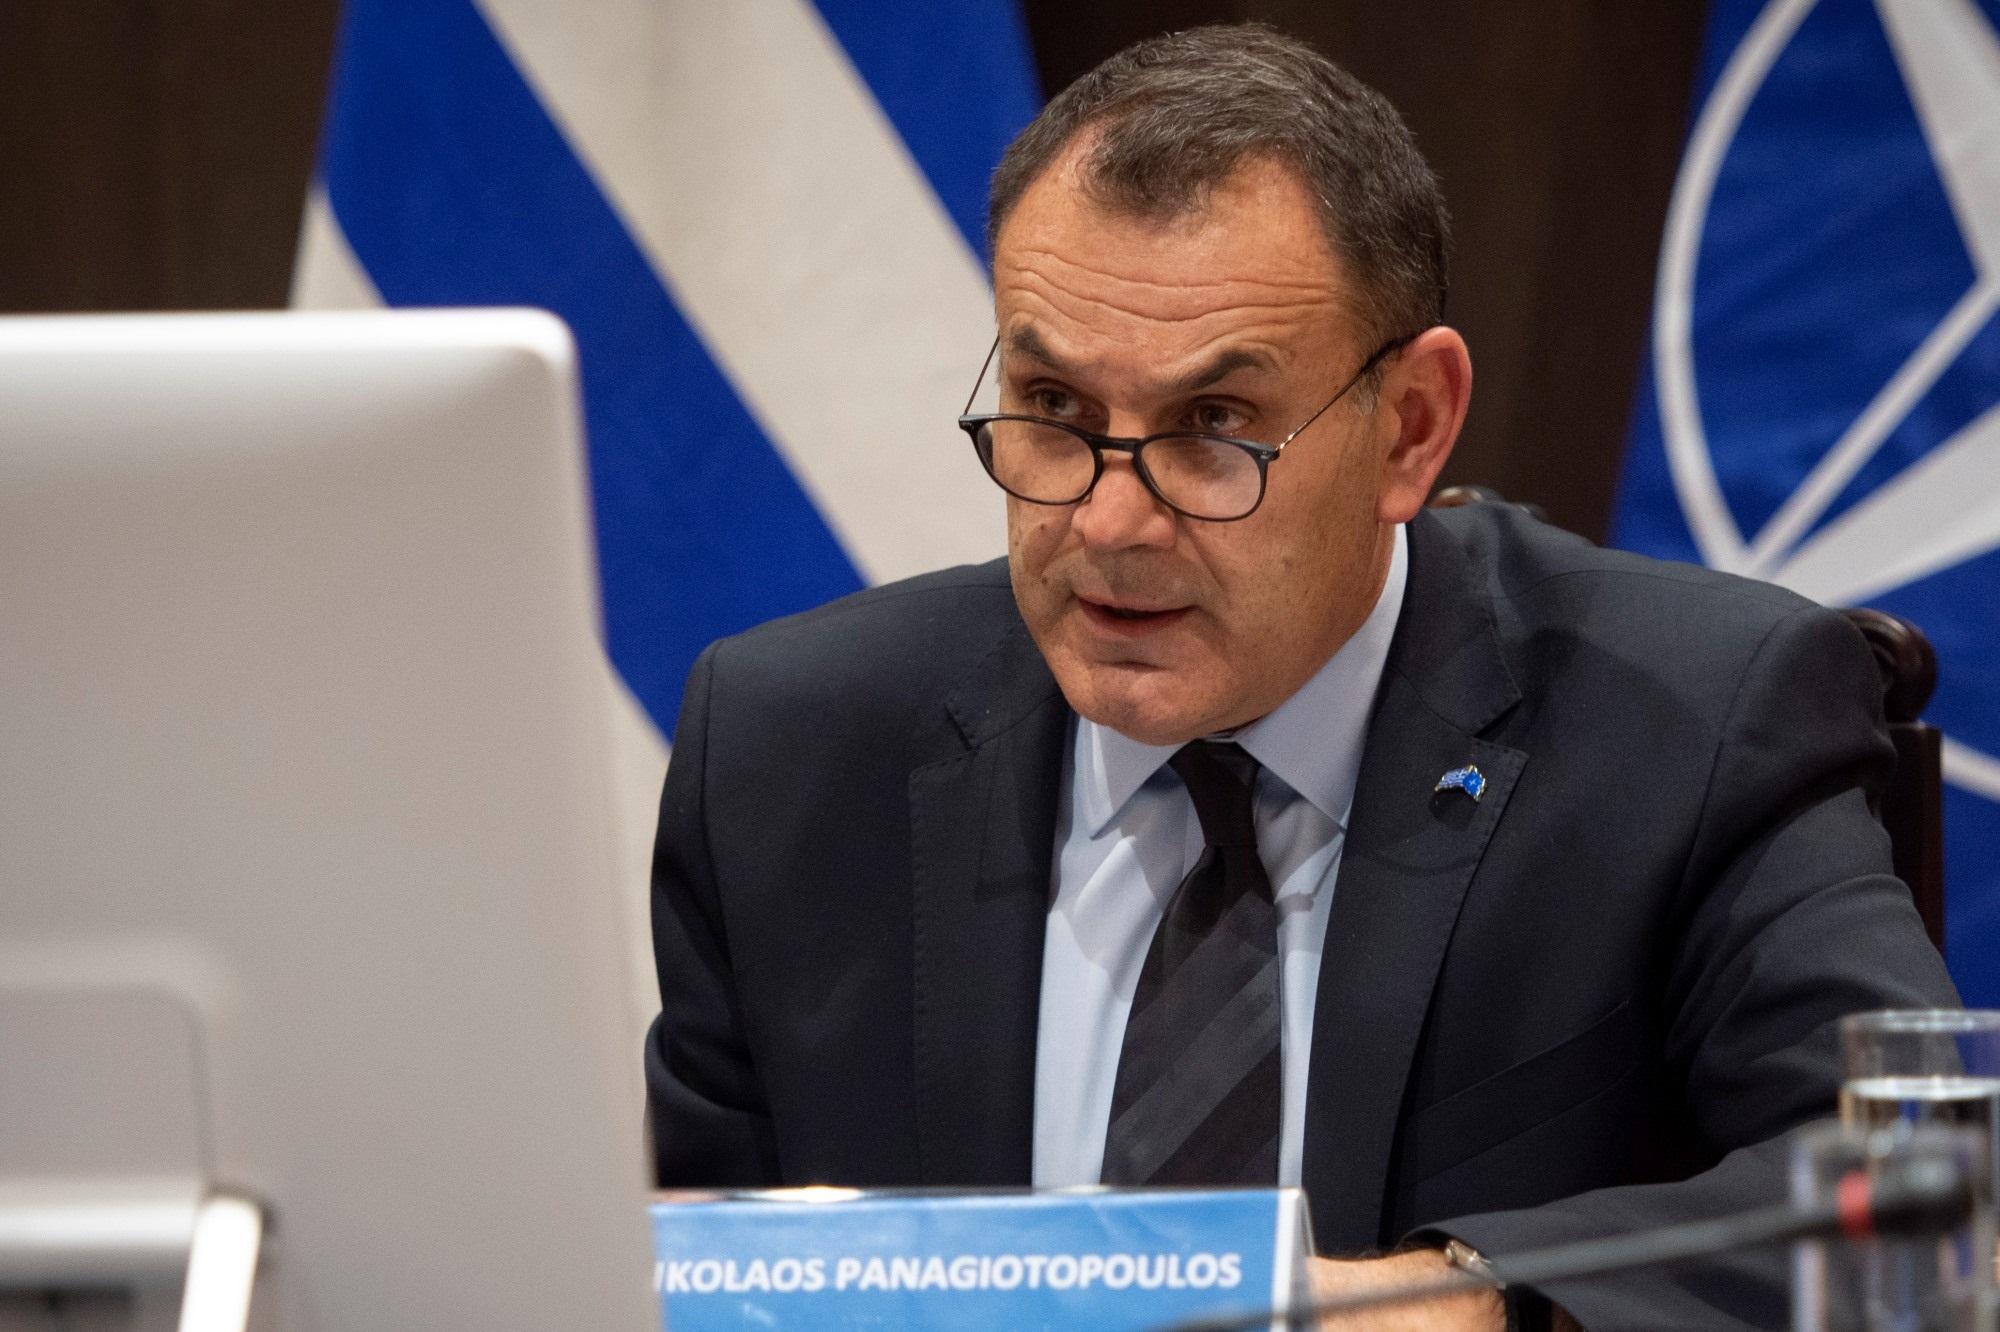 Παναγιωτόπουλος για Ναυπηγεία Ελευσίνας: Δεν διαγράφεται ούτε ένα ευρώ από το χρέος στο Πολεμικό Ναυτικό